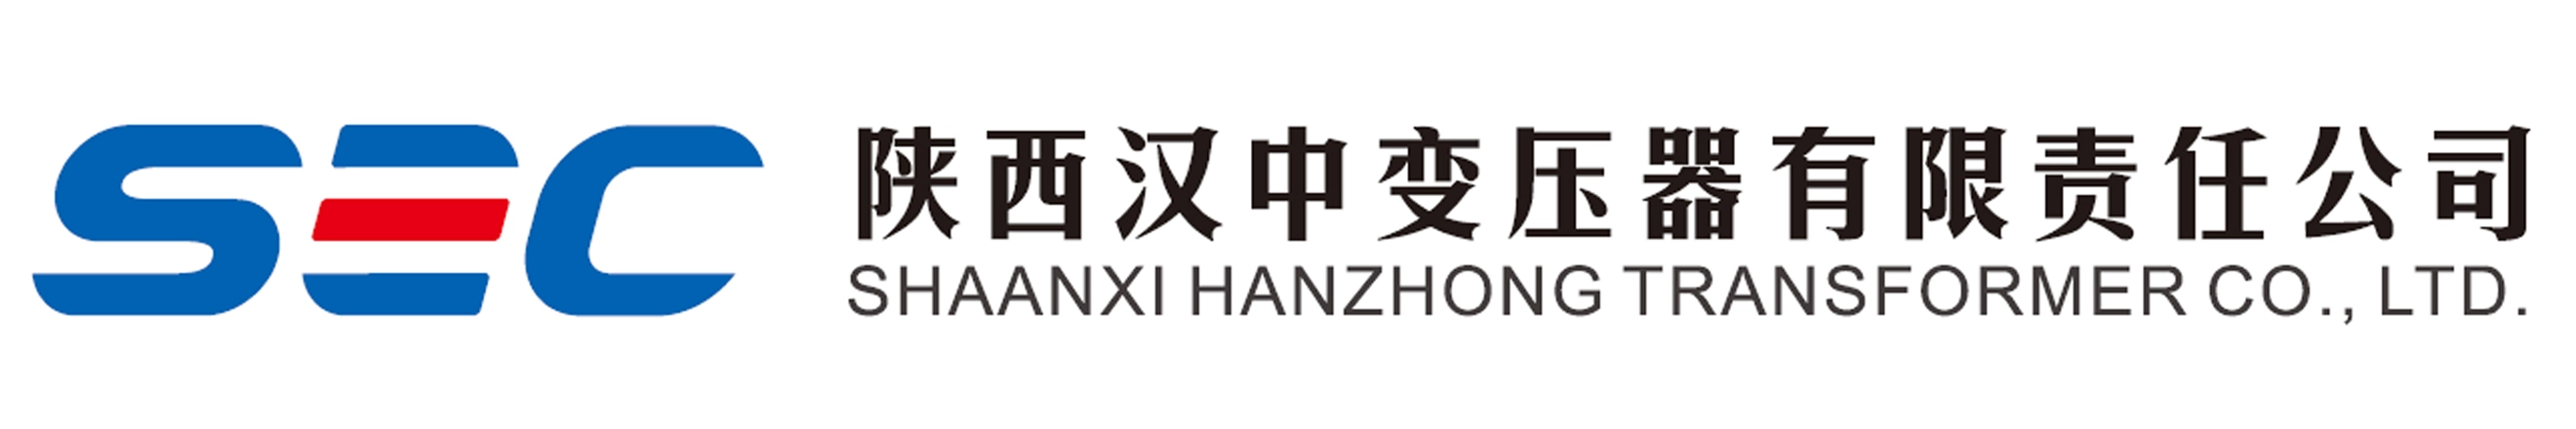 Shaanxi Hanzhong Transformer Co., ltd